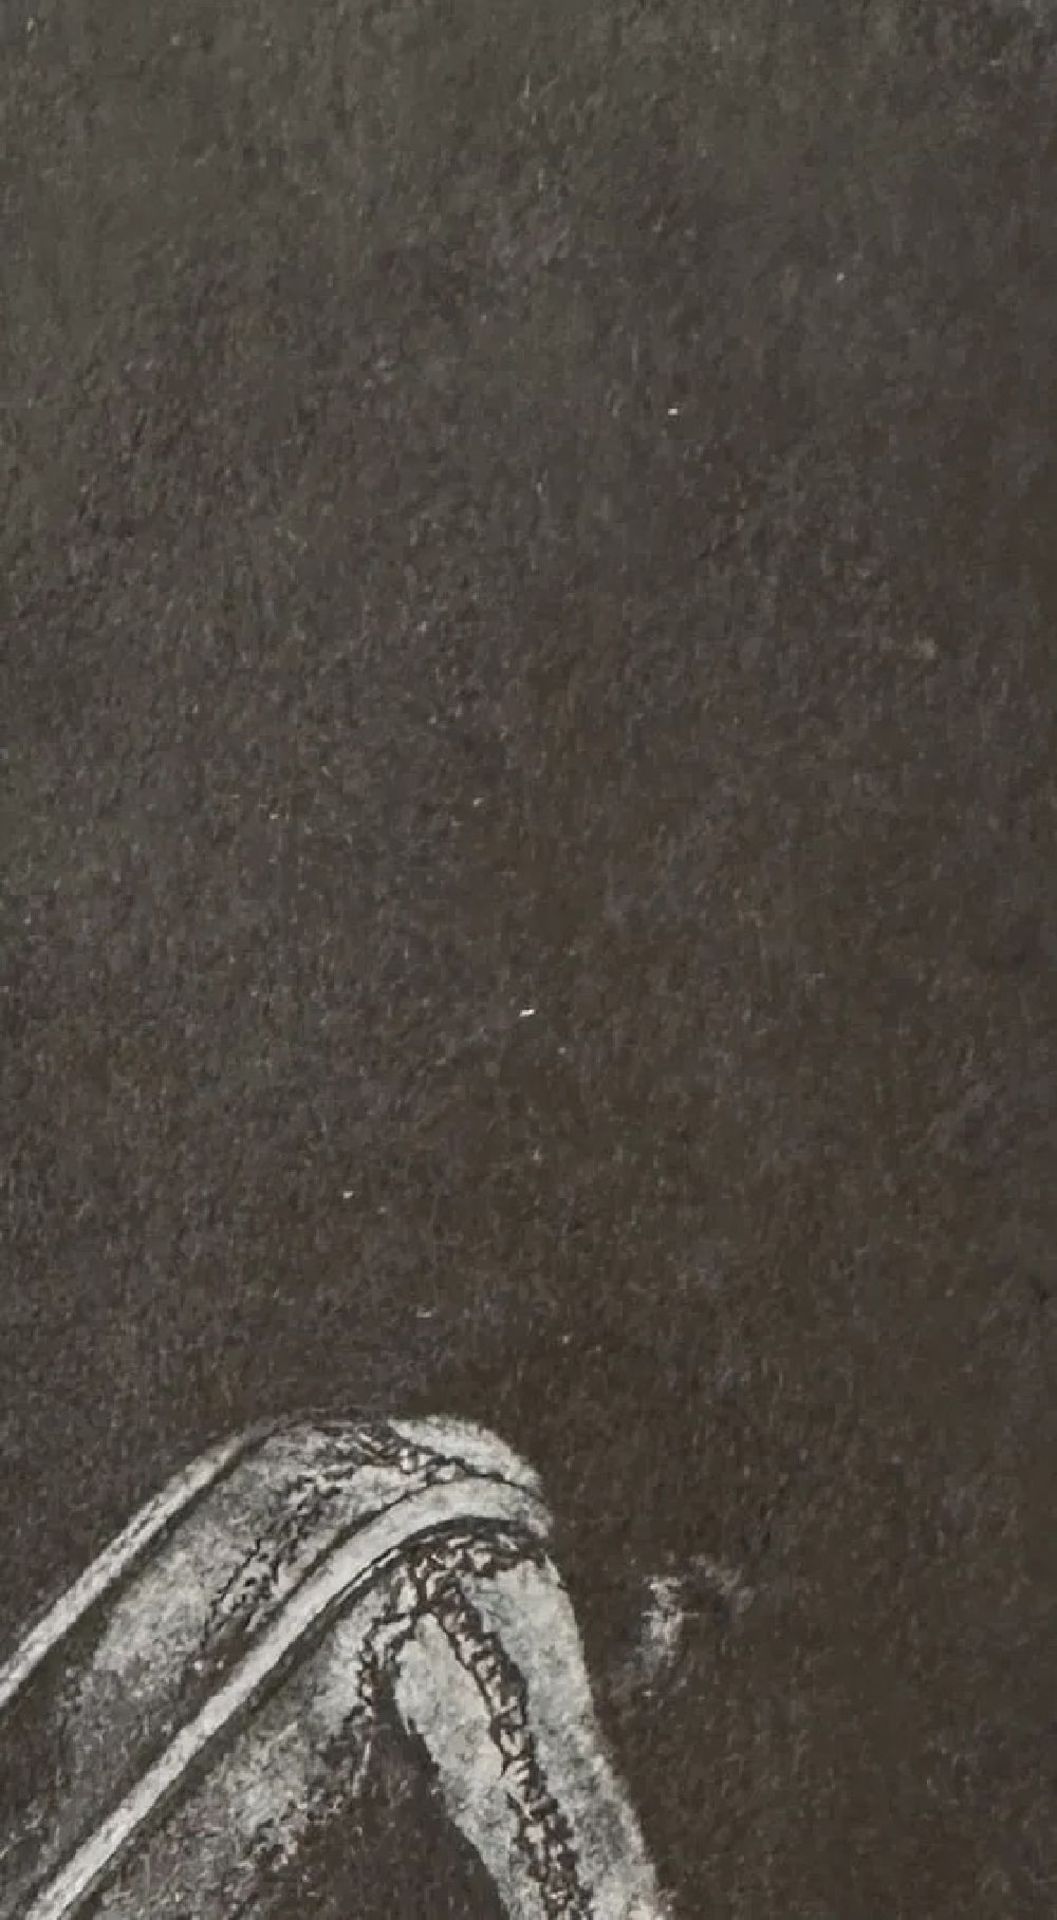 Francisco Goya "Untitled" Print - Image 4 of 6